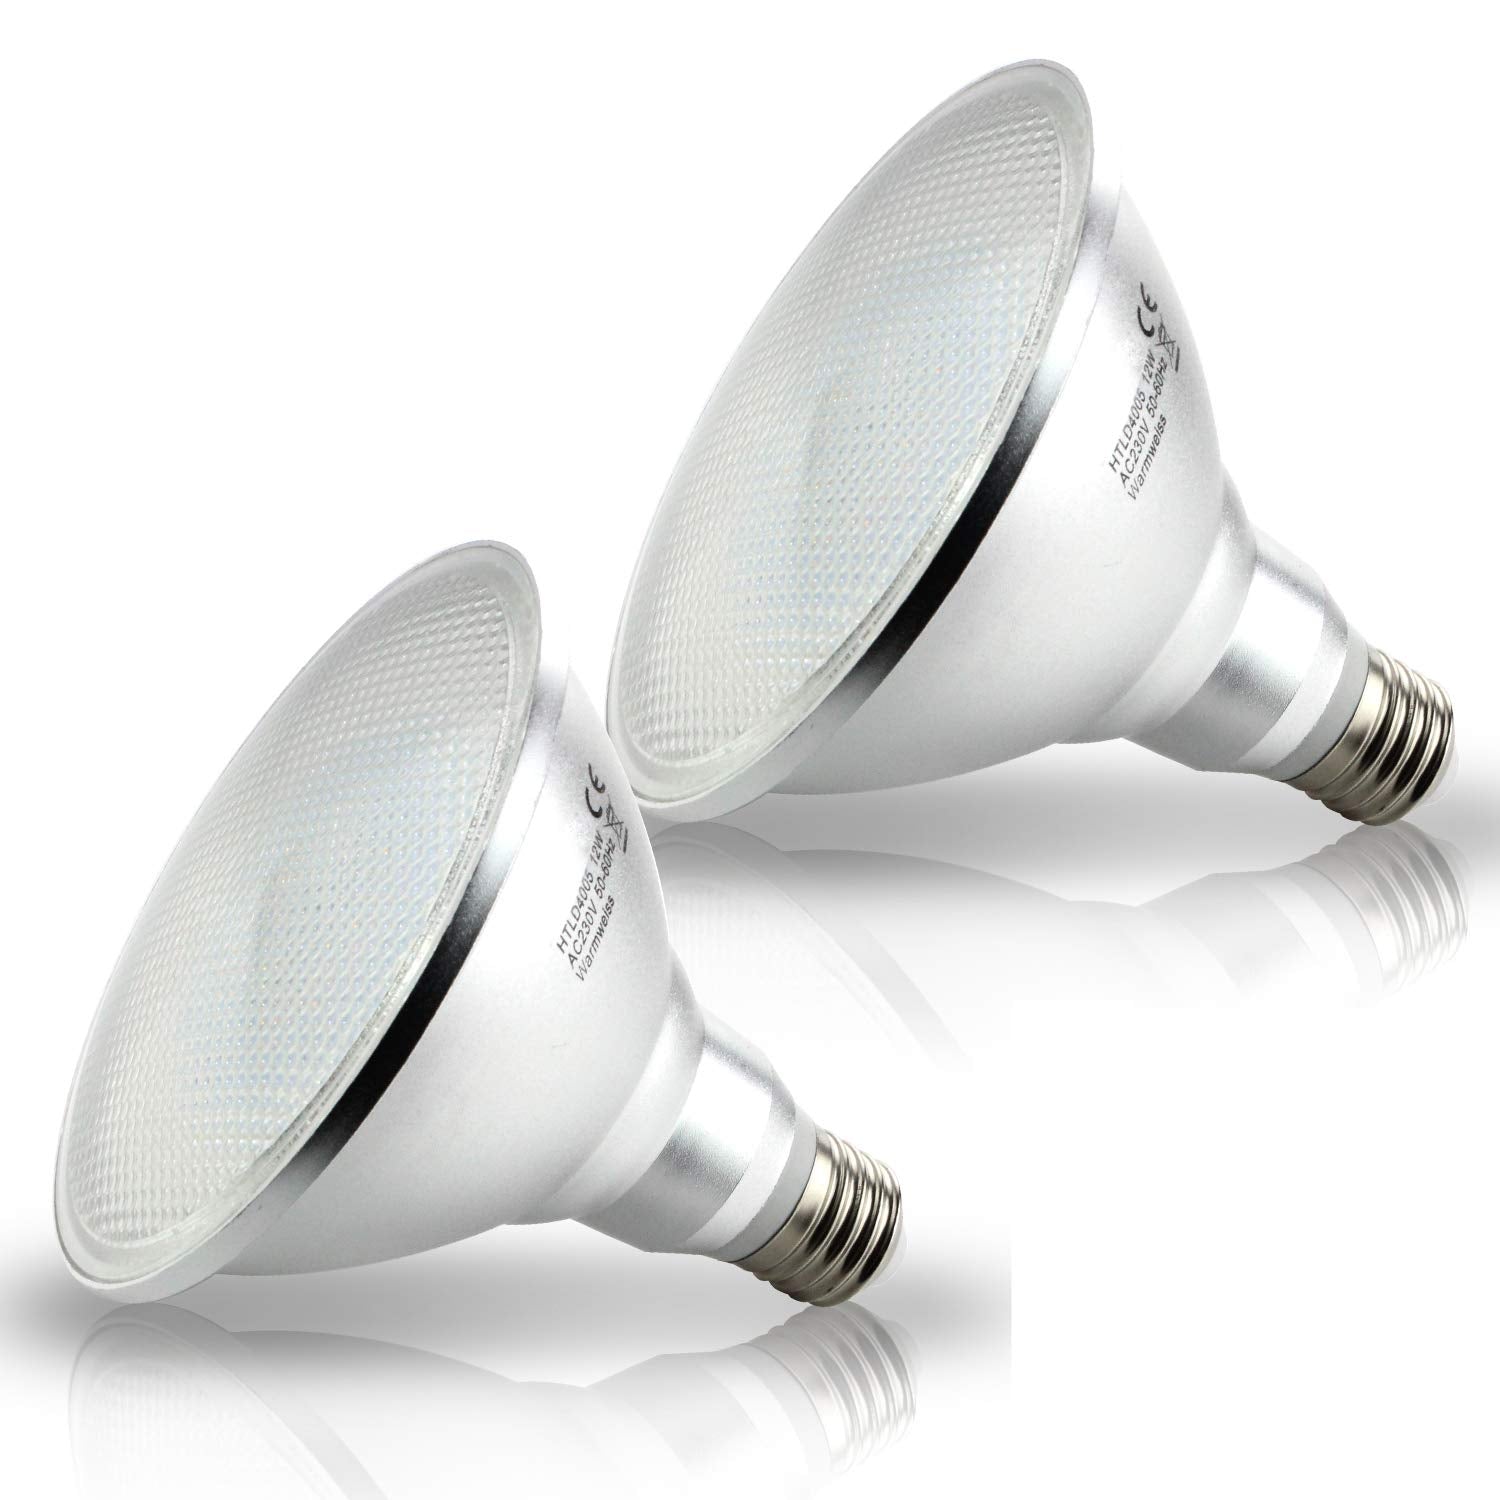 HiBay 2 Packs 12W E27 PAR38 LED Bulbs Spot Lights Warm White ES PAR 38 Floodlights IP20, Eqv. to 120W Halogen Reflector Lamps 240V